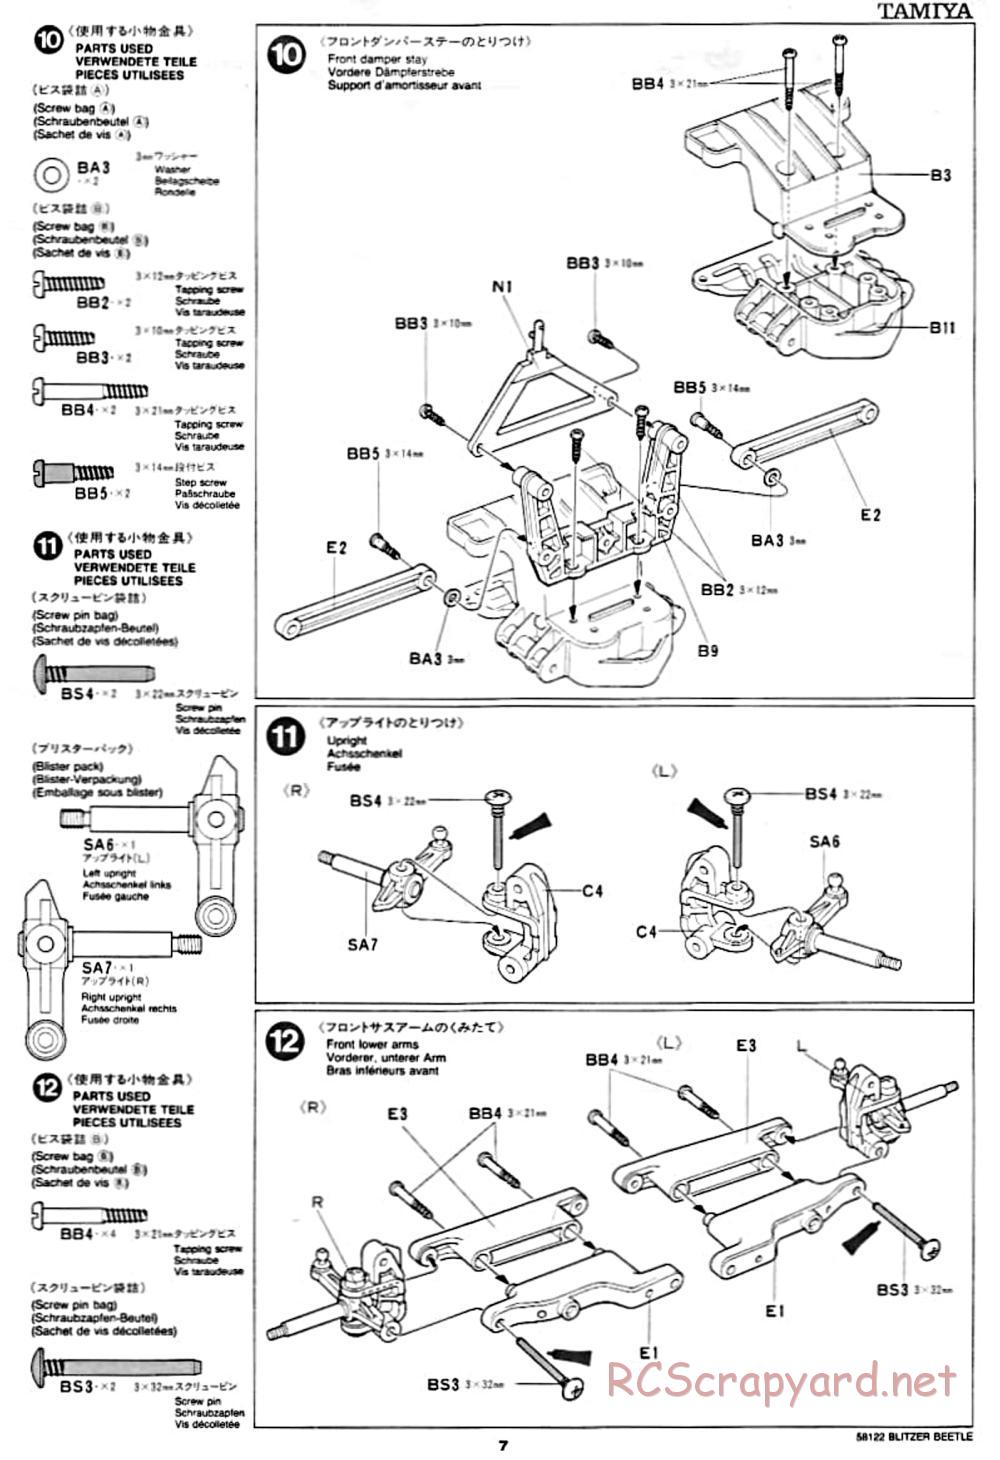 Tamiya - Blitzer Beetle Chassis - Manual - Page 7